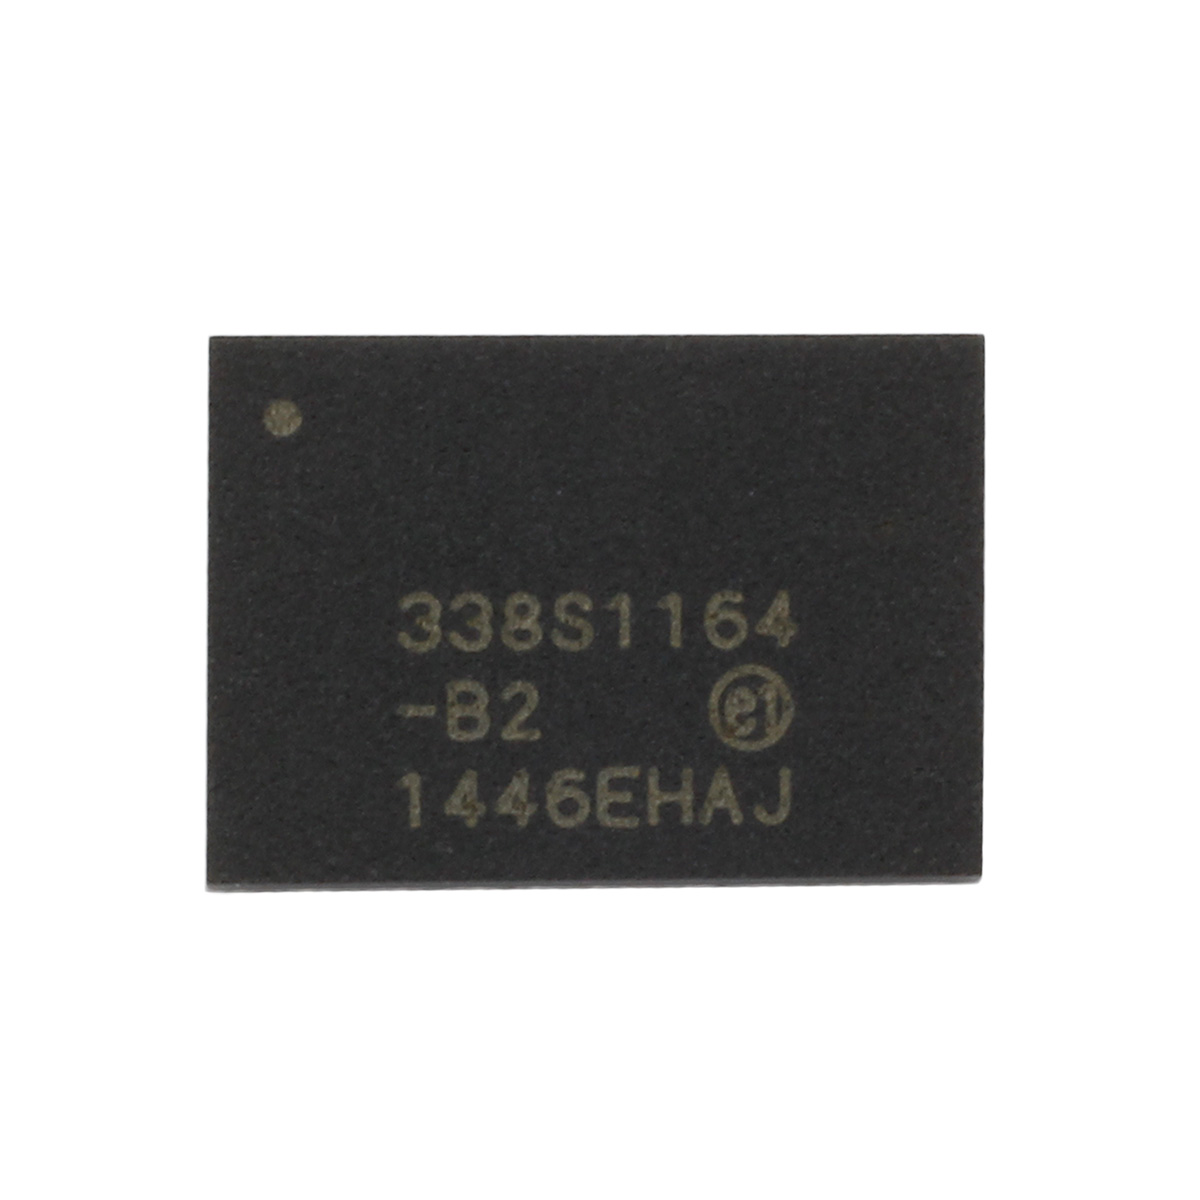 IC-Chip für Power Management 338S1164,  kompatibel mit iPhone 5C